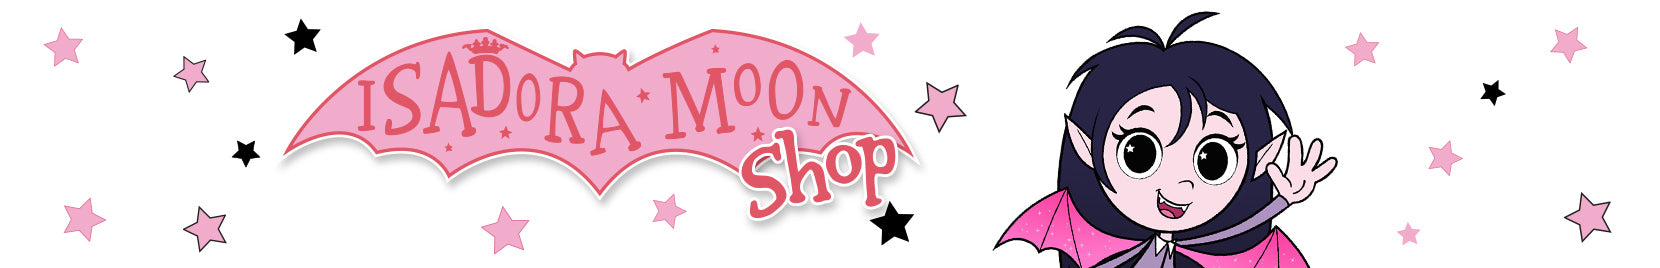 Isadora Moon Shop